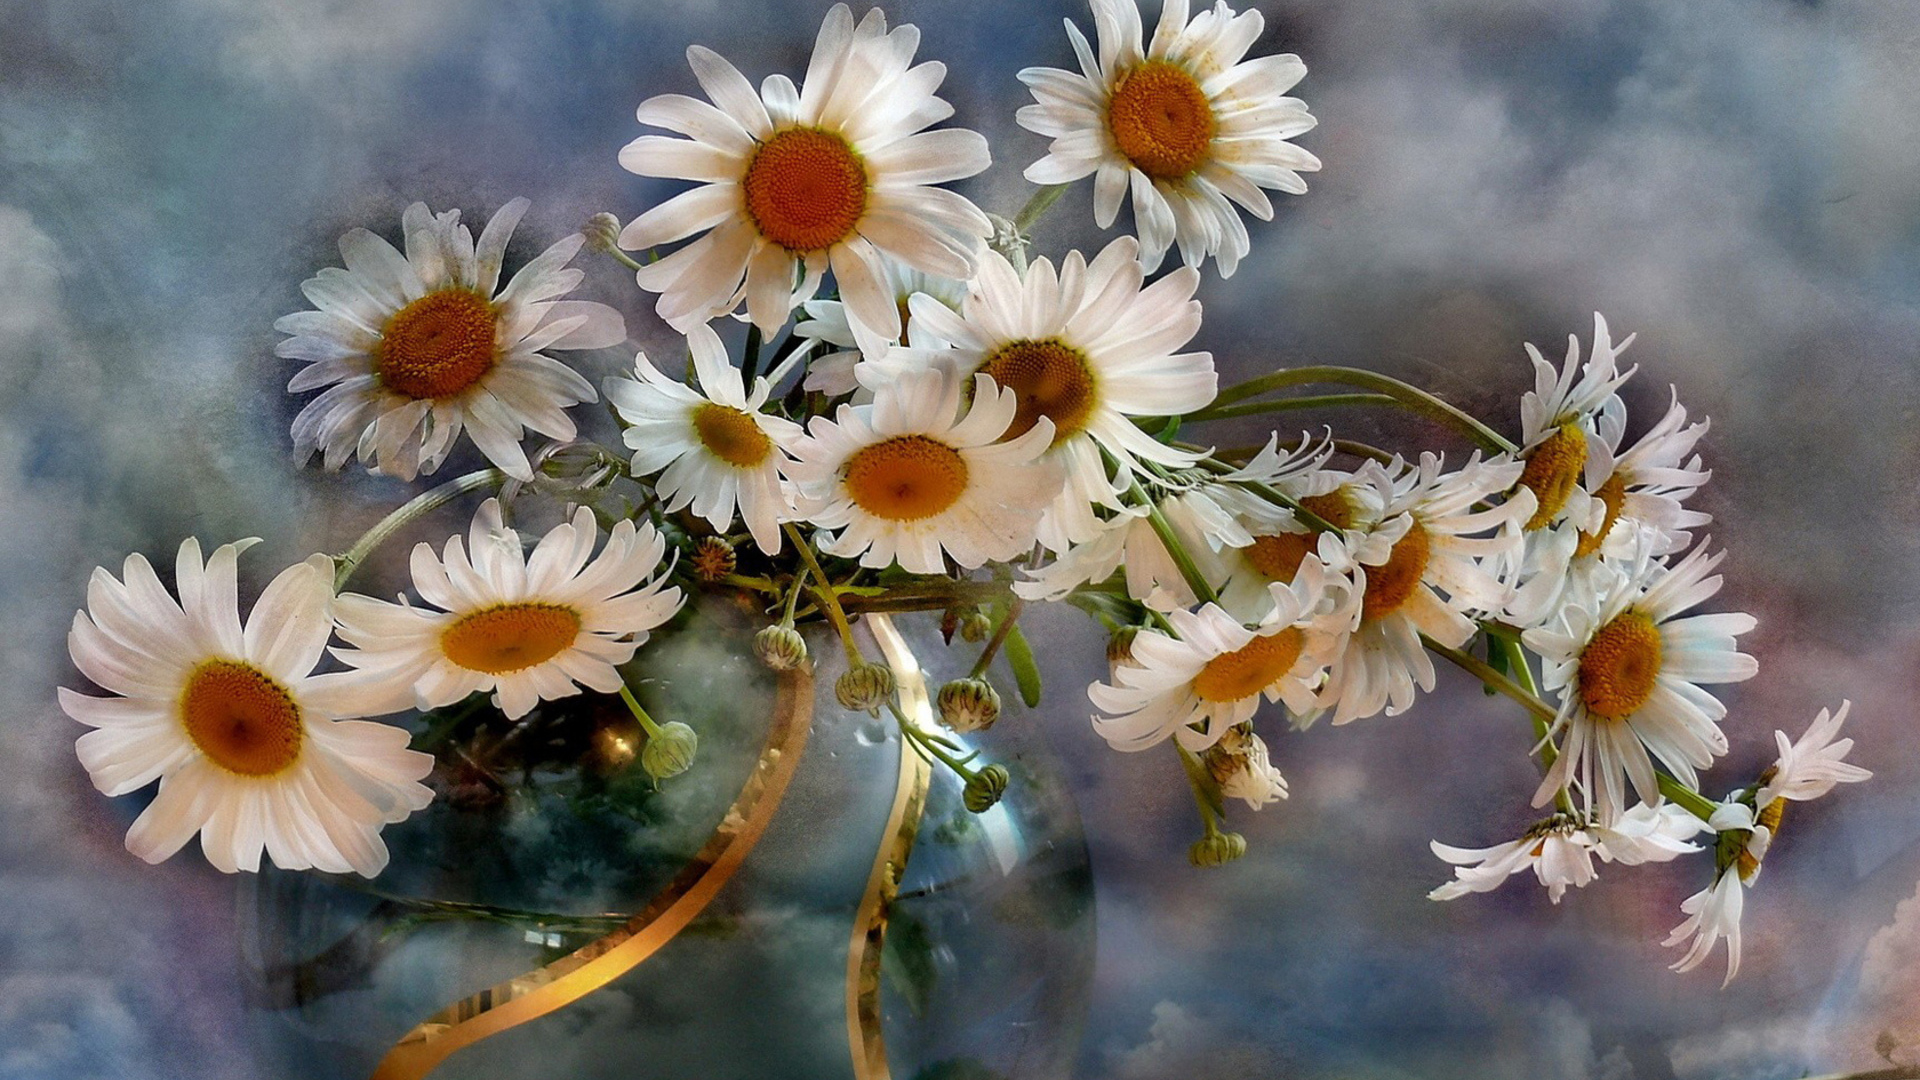 camomile, earth, daisy, flower, still life, vase, white flower, flowers